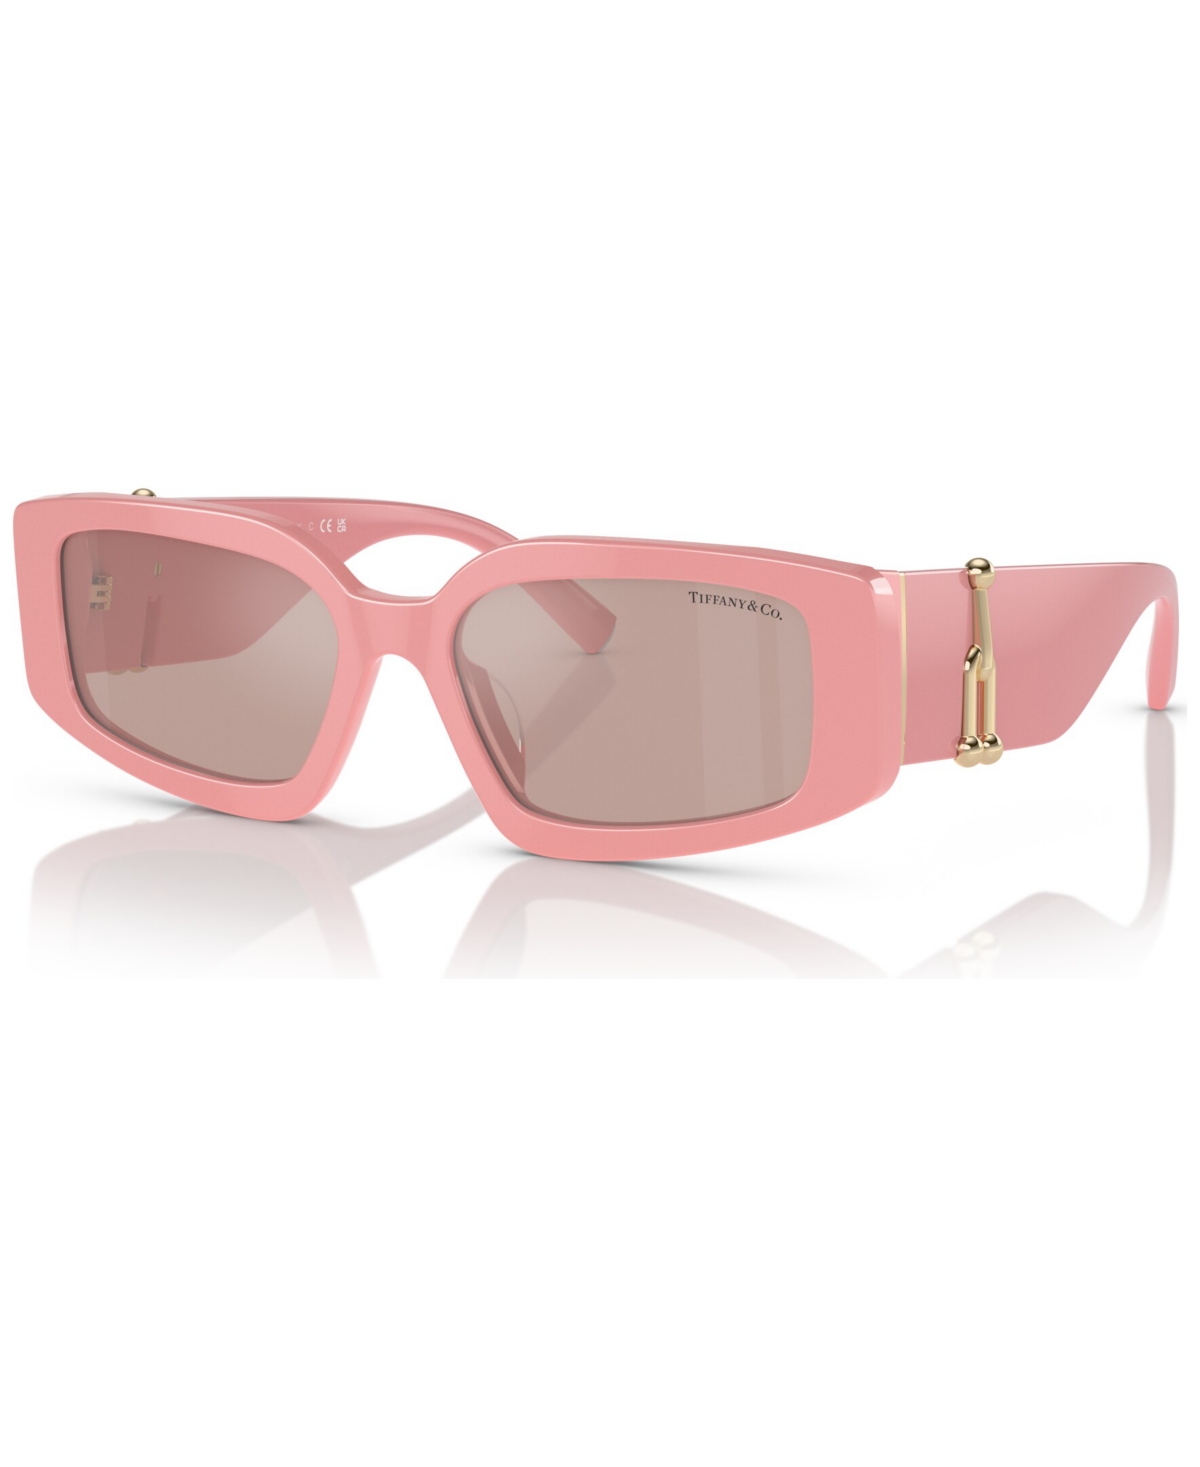 Tiffany & Co Women's Sunglasses, Steve Mcqueen Tf4208u In Light Pink Mirror Silver